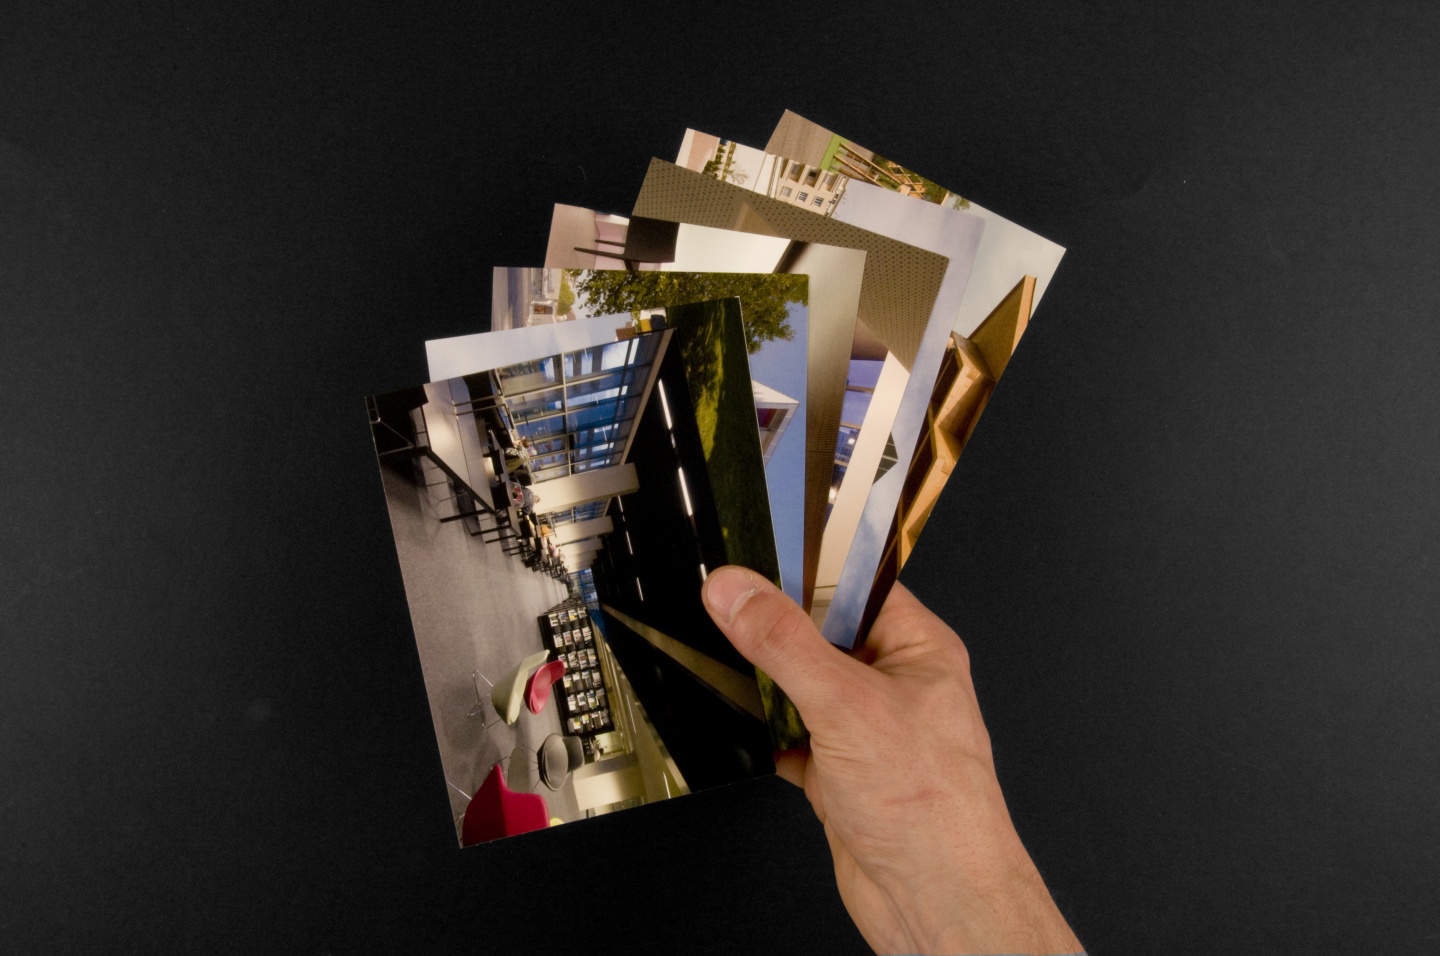 L’identité s'appuie sur le travail photographique régulier de Didier Boy de la Tour: série de cartes postales plutôt qu’une carte de correspondance classique.